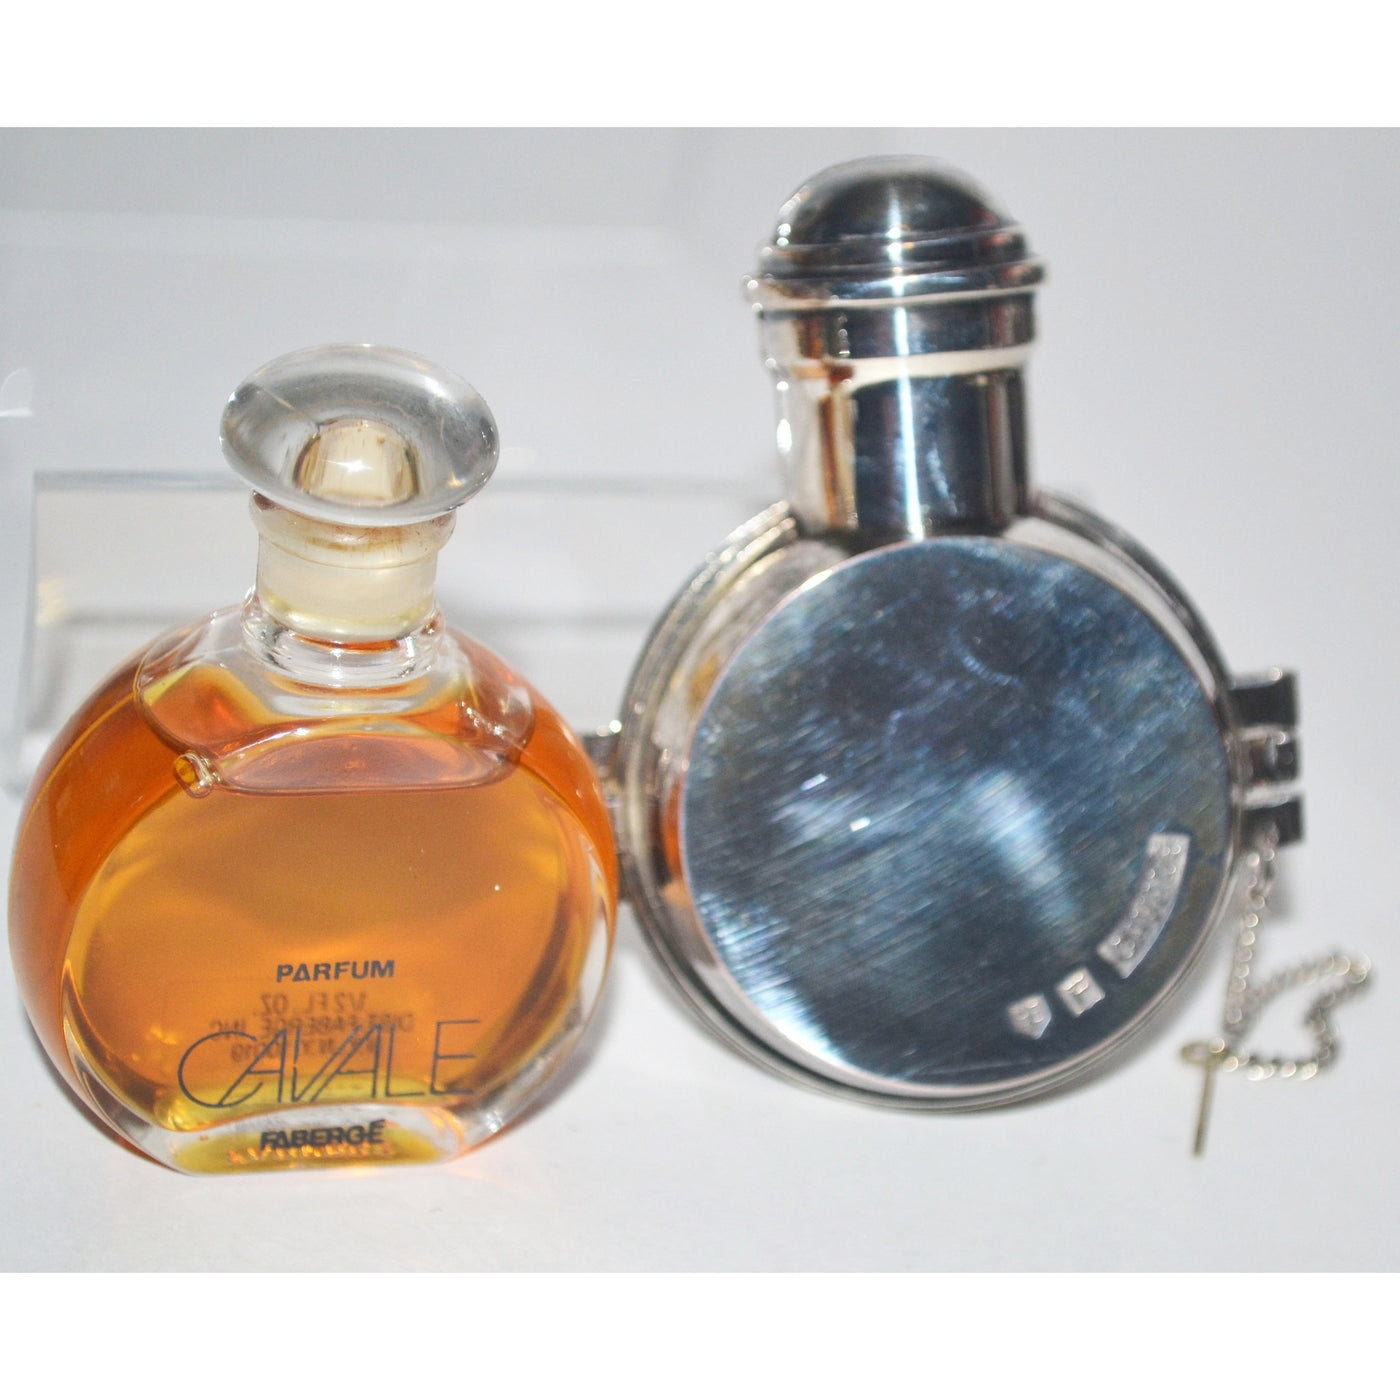 Vintage Cavale Parfum By Faberge